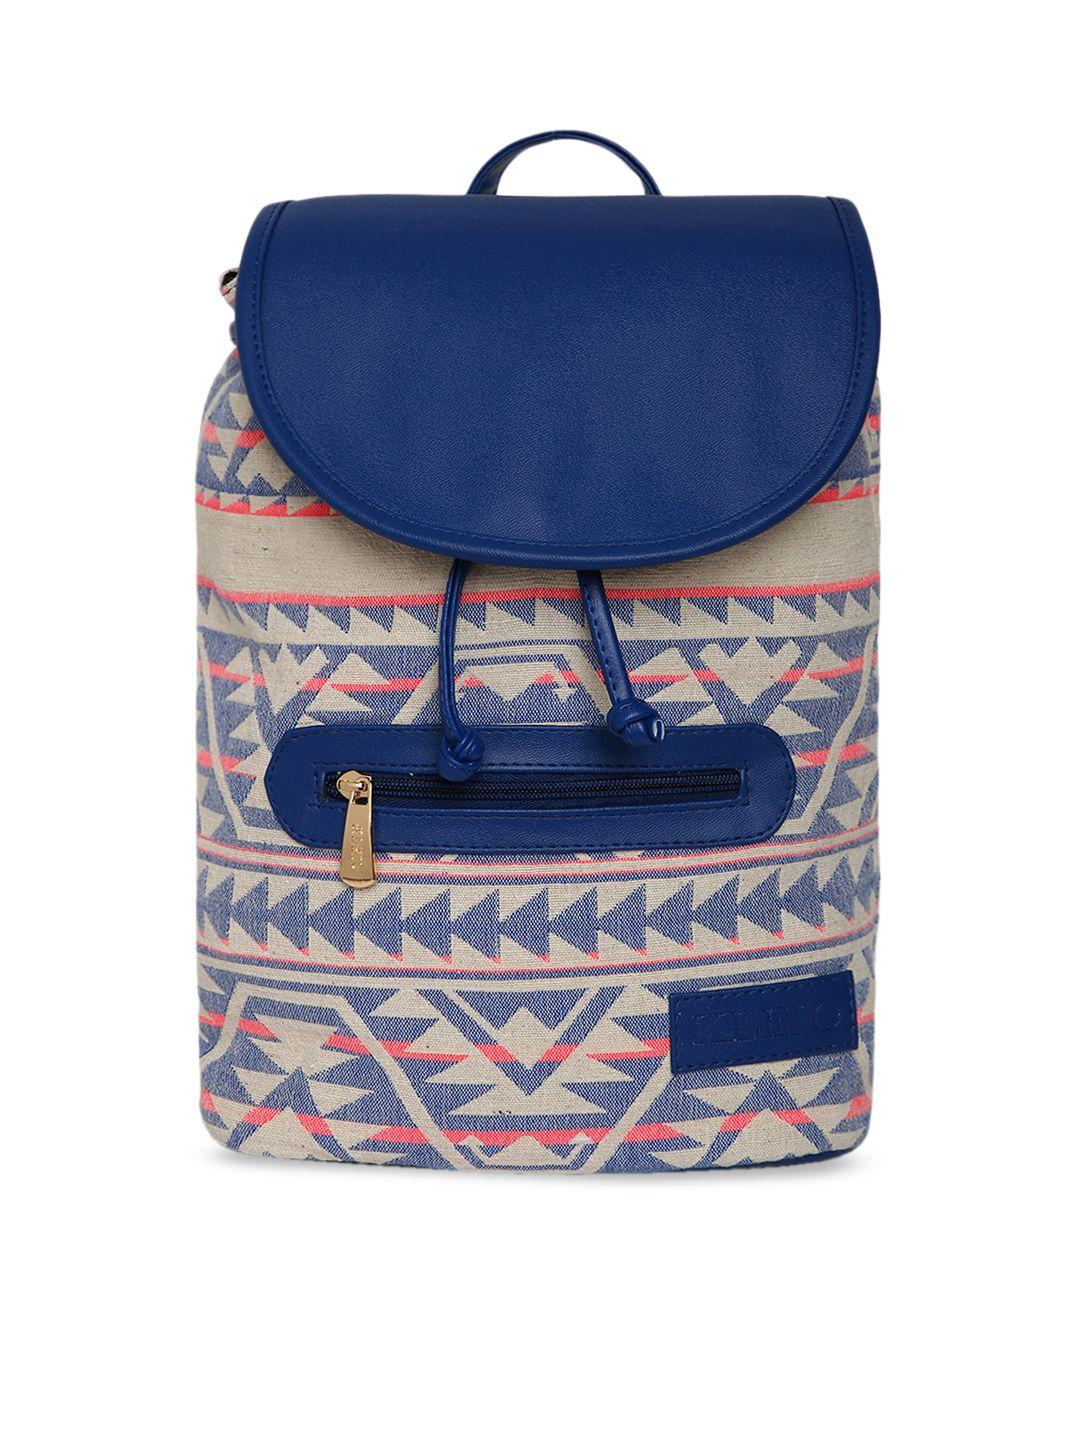 kleio women blue & beige printed backpack